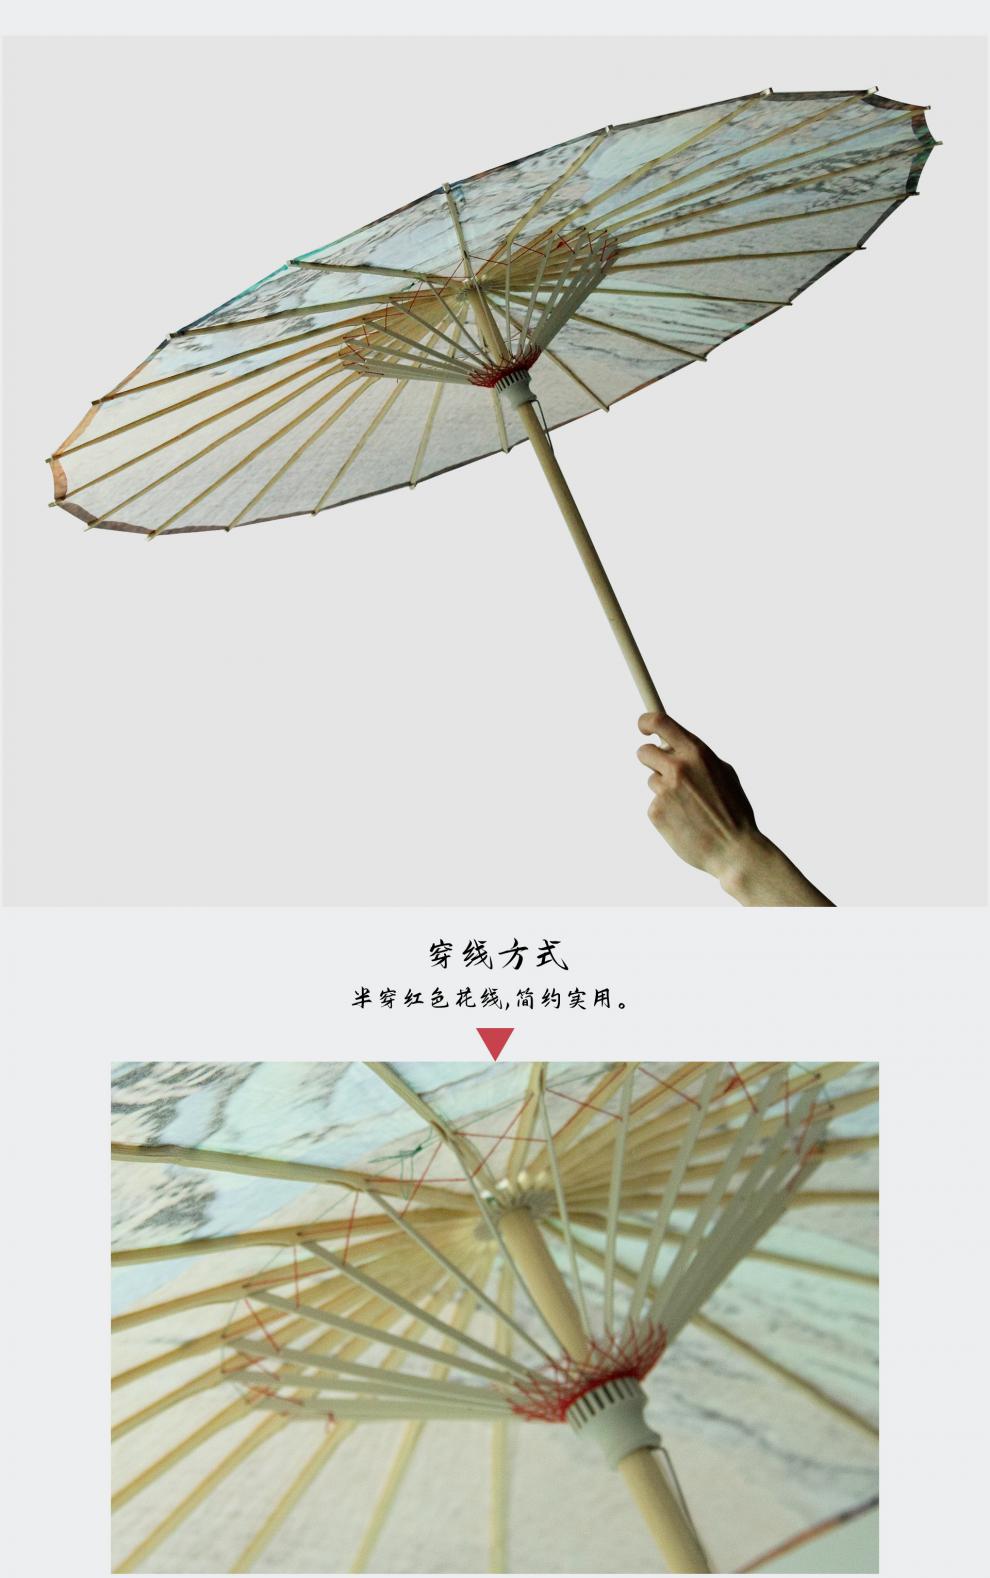 防雨防水油纸伞防晒纯手工传统古风伞实用演出道具汉服搭配桐油伞红帽